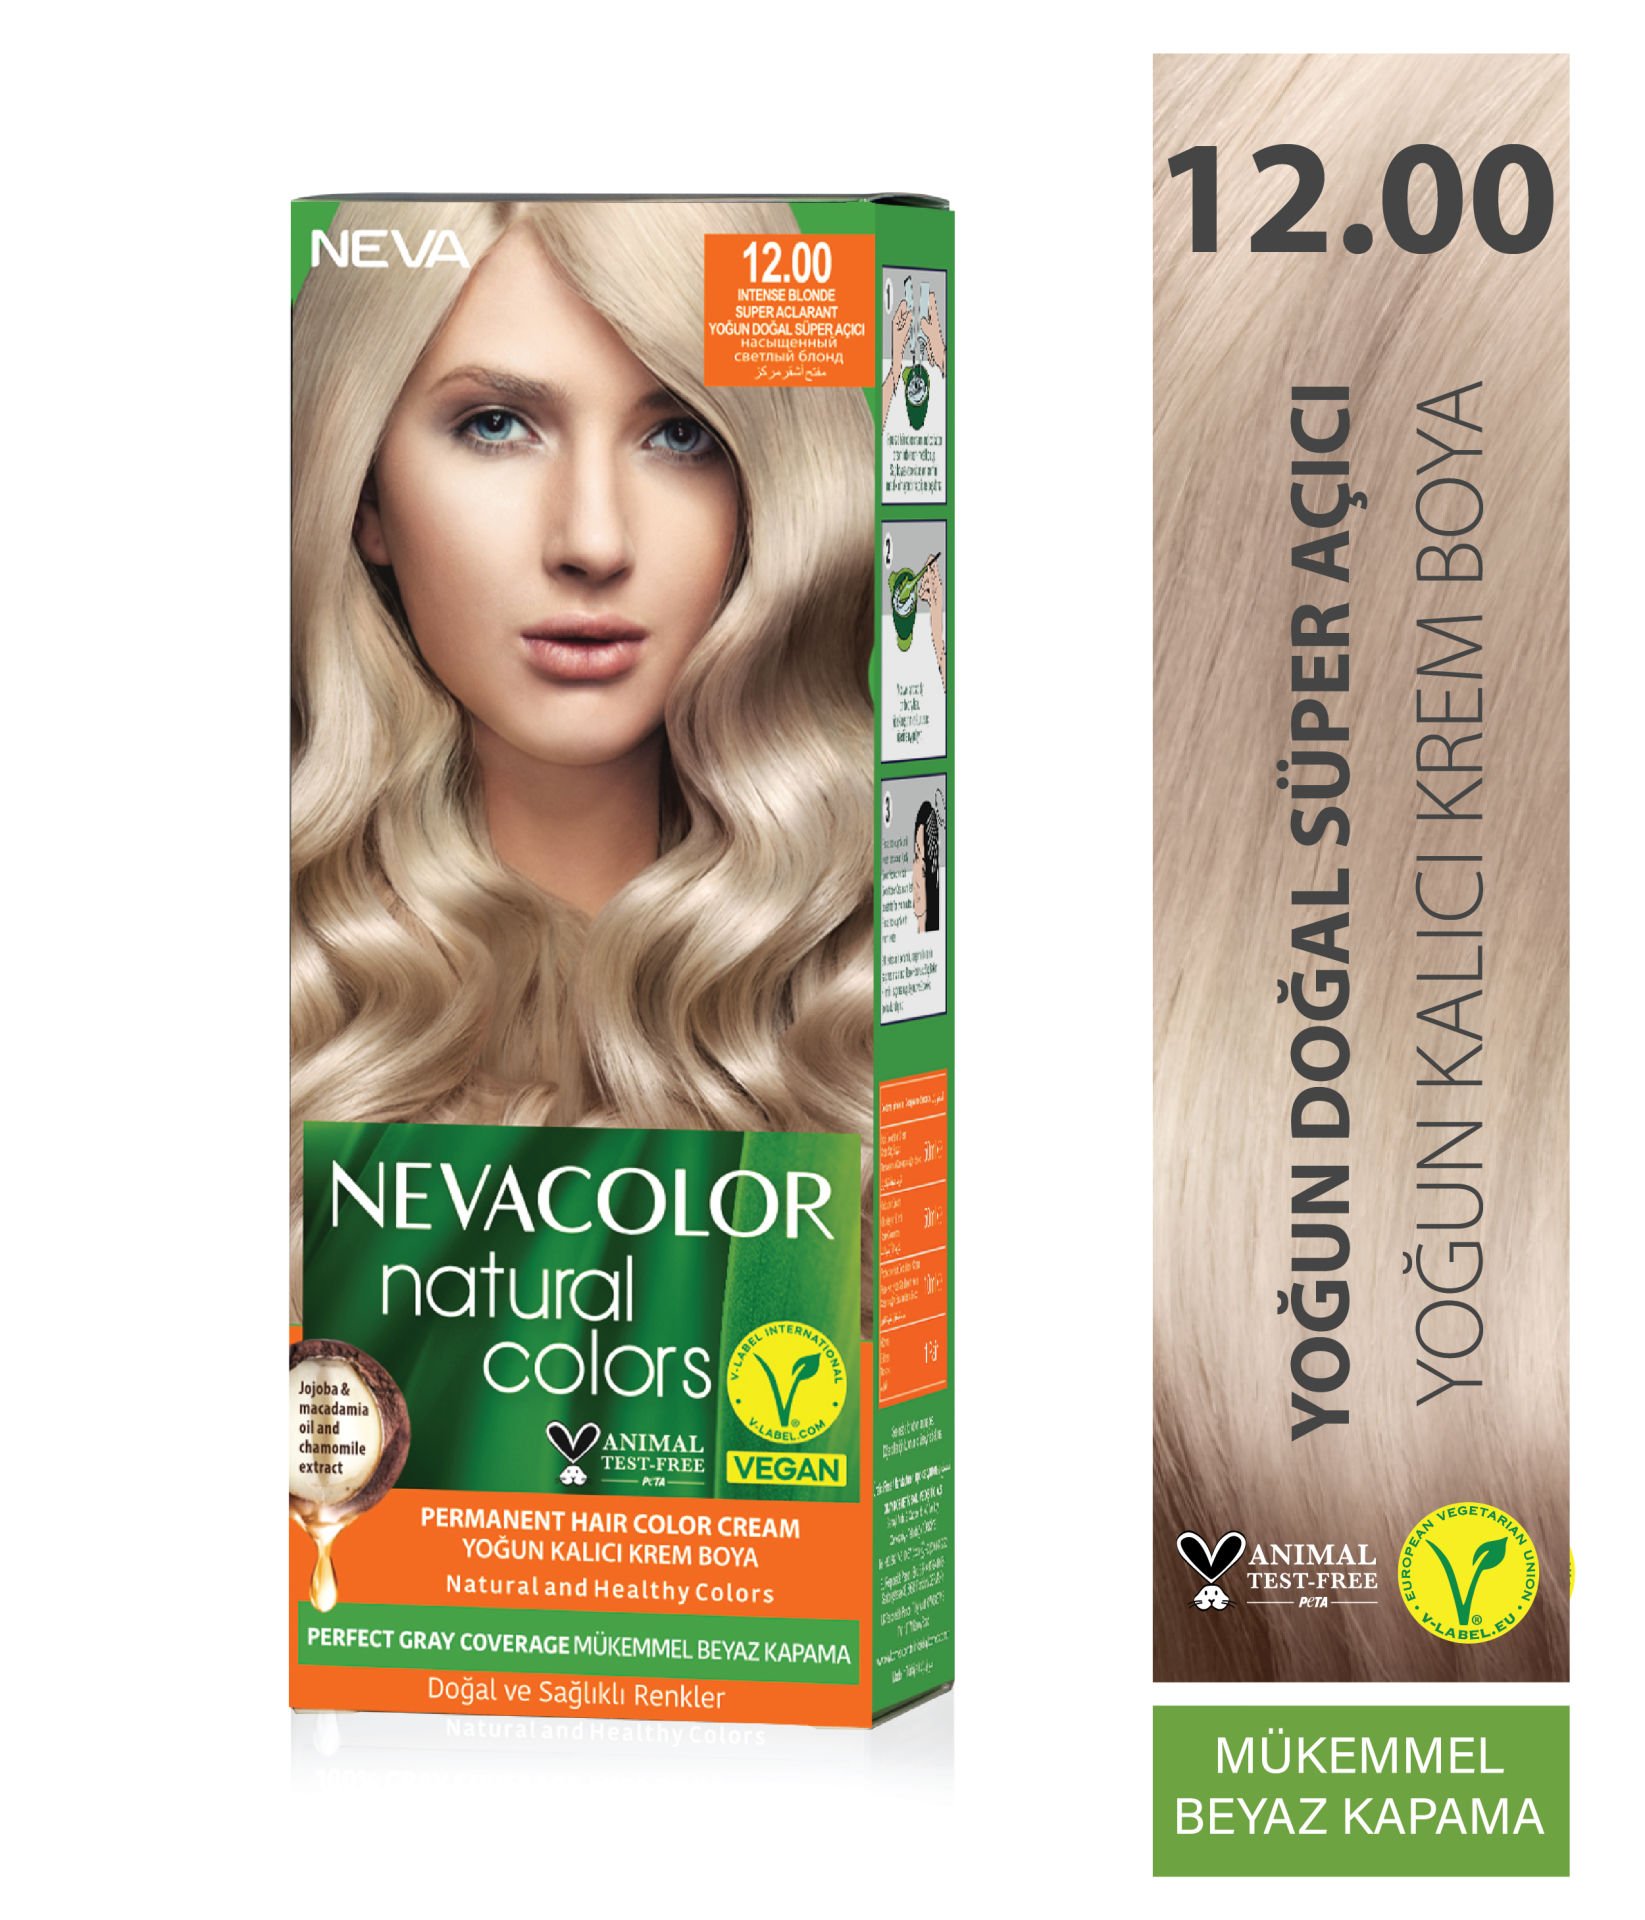 Nevacolor Natural Colors 12.00 Yoğun Doğal Süper Açıcı - Kalıcı Krem Saç Boyası Seti